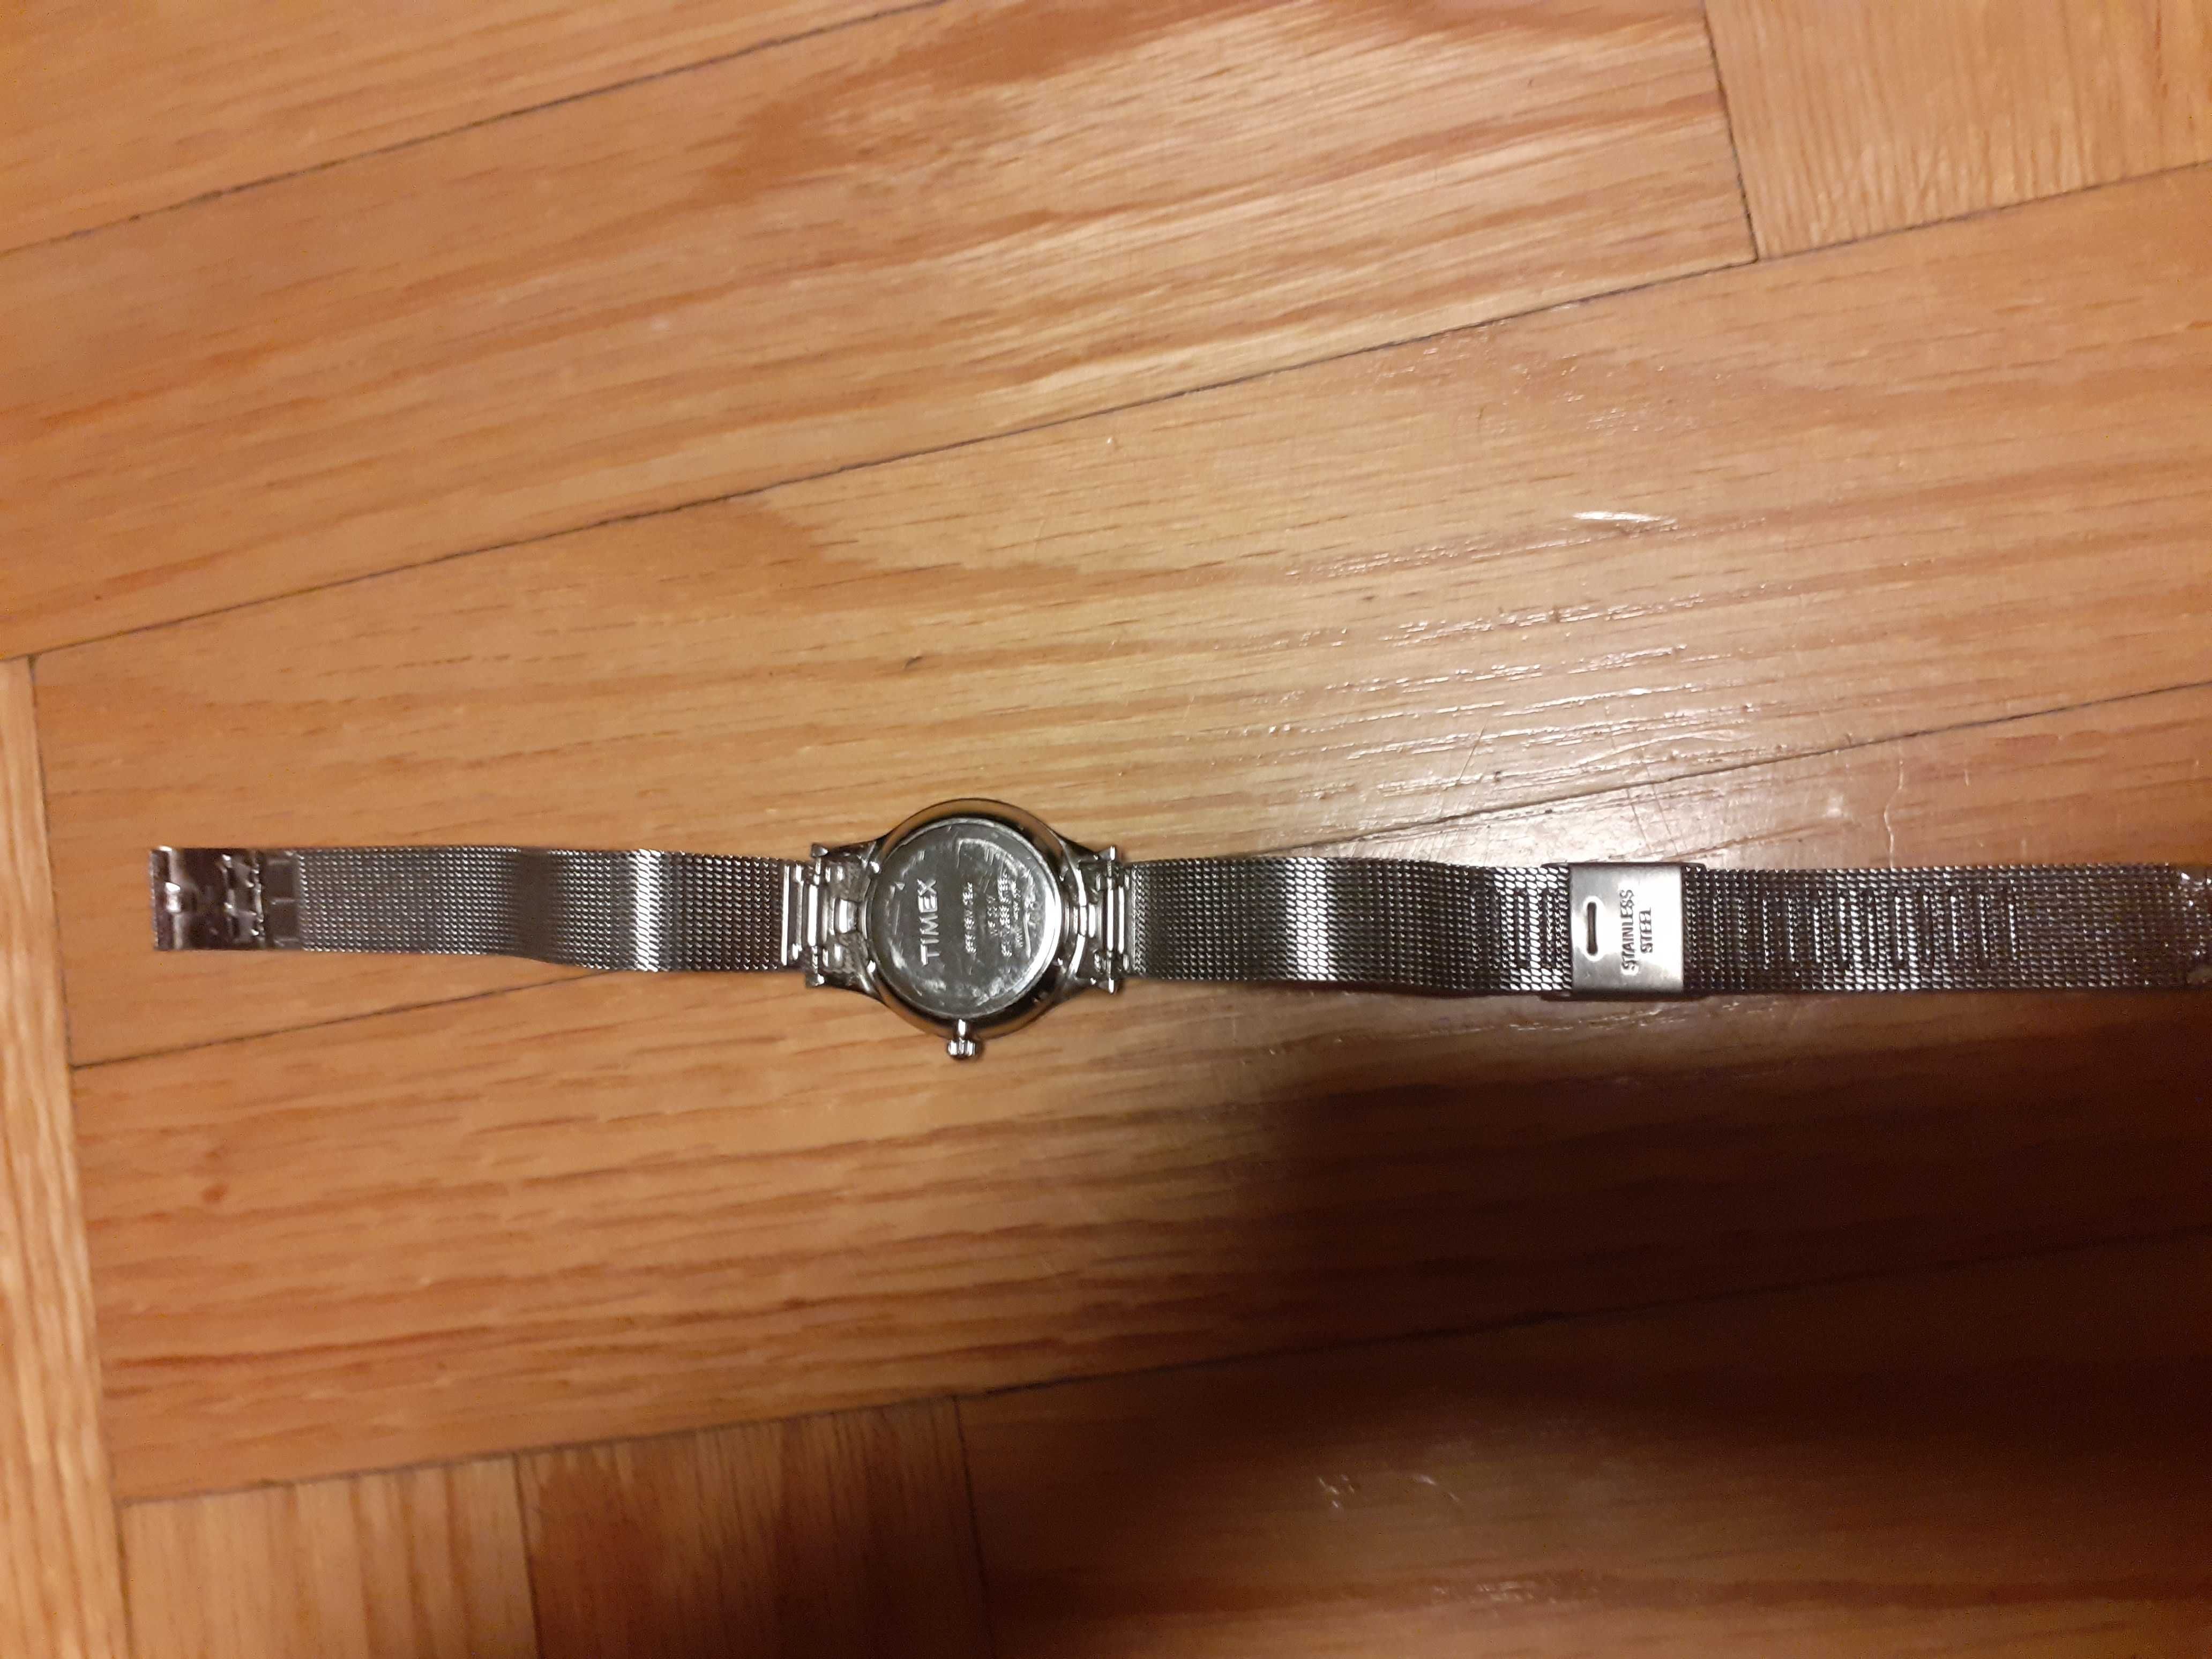 Timex srebrny zegarek damski